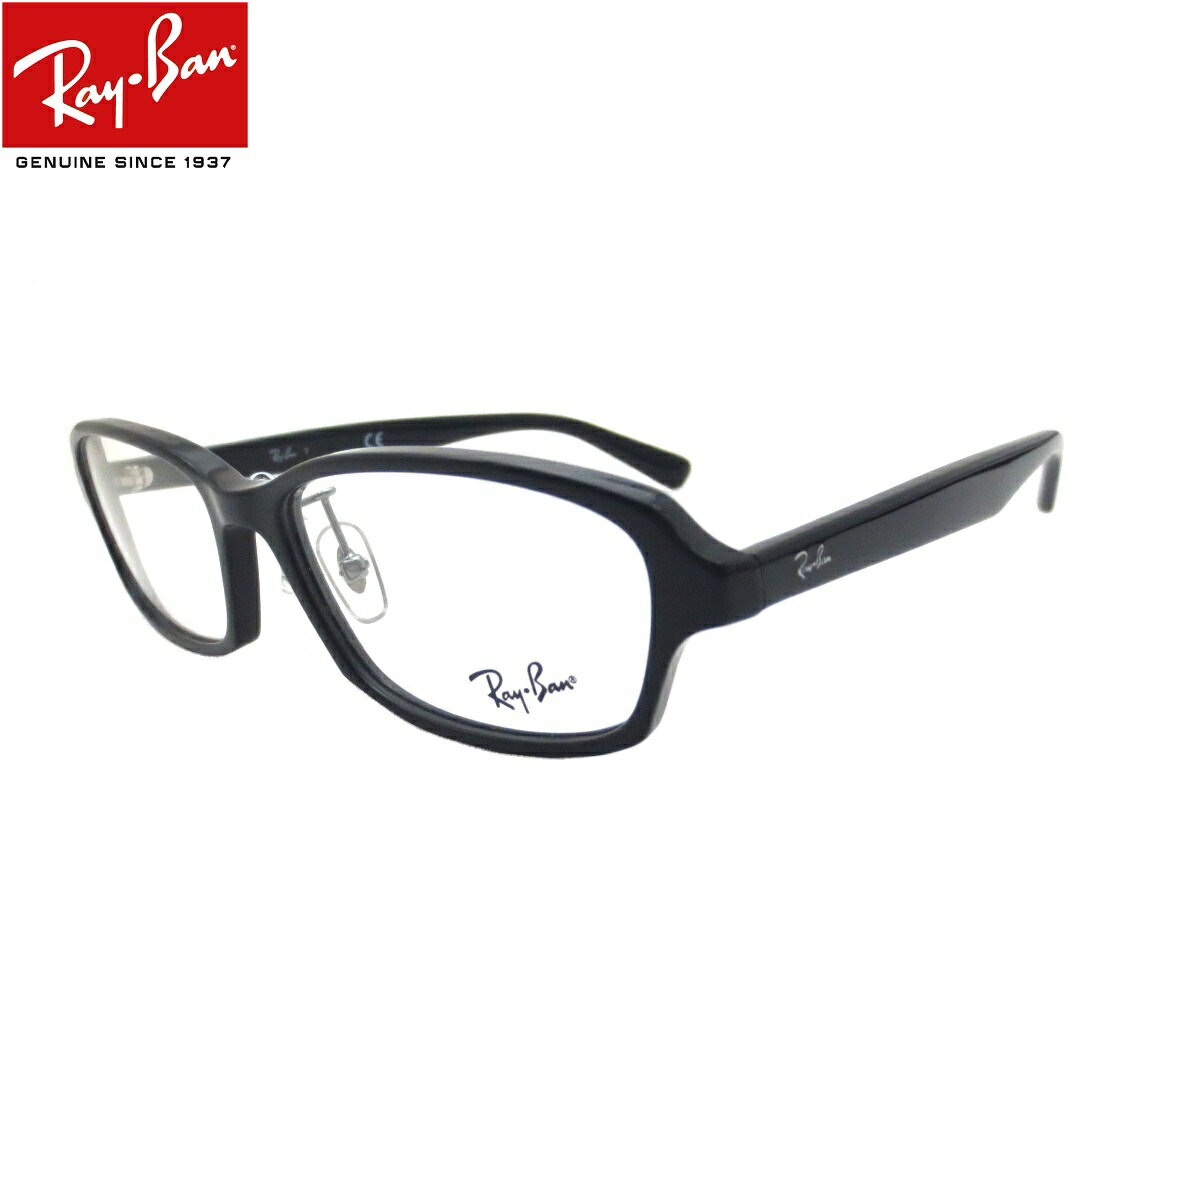 レイバン Ray-Ban 老眼鏡 シニアグラス メガネ (レイバン Ray-Ban）RX5385D 2000(サイズ55)UVカットレンズ付き クリアレンズ 【あす楽対応】 1